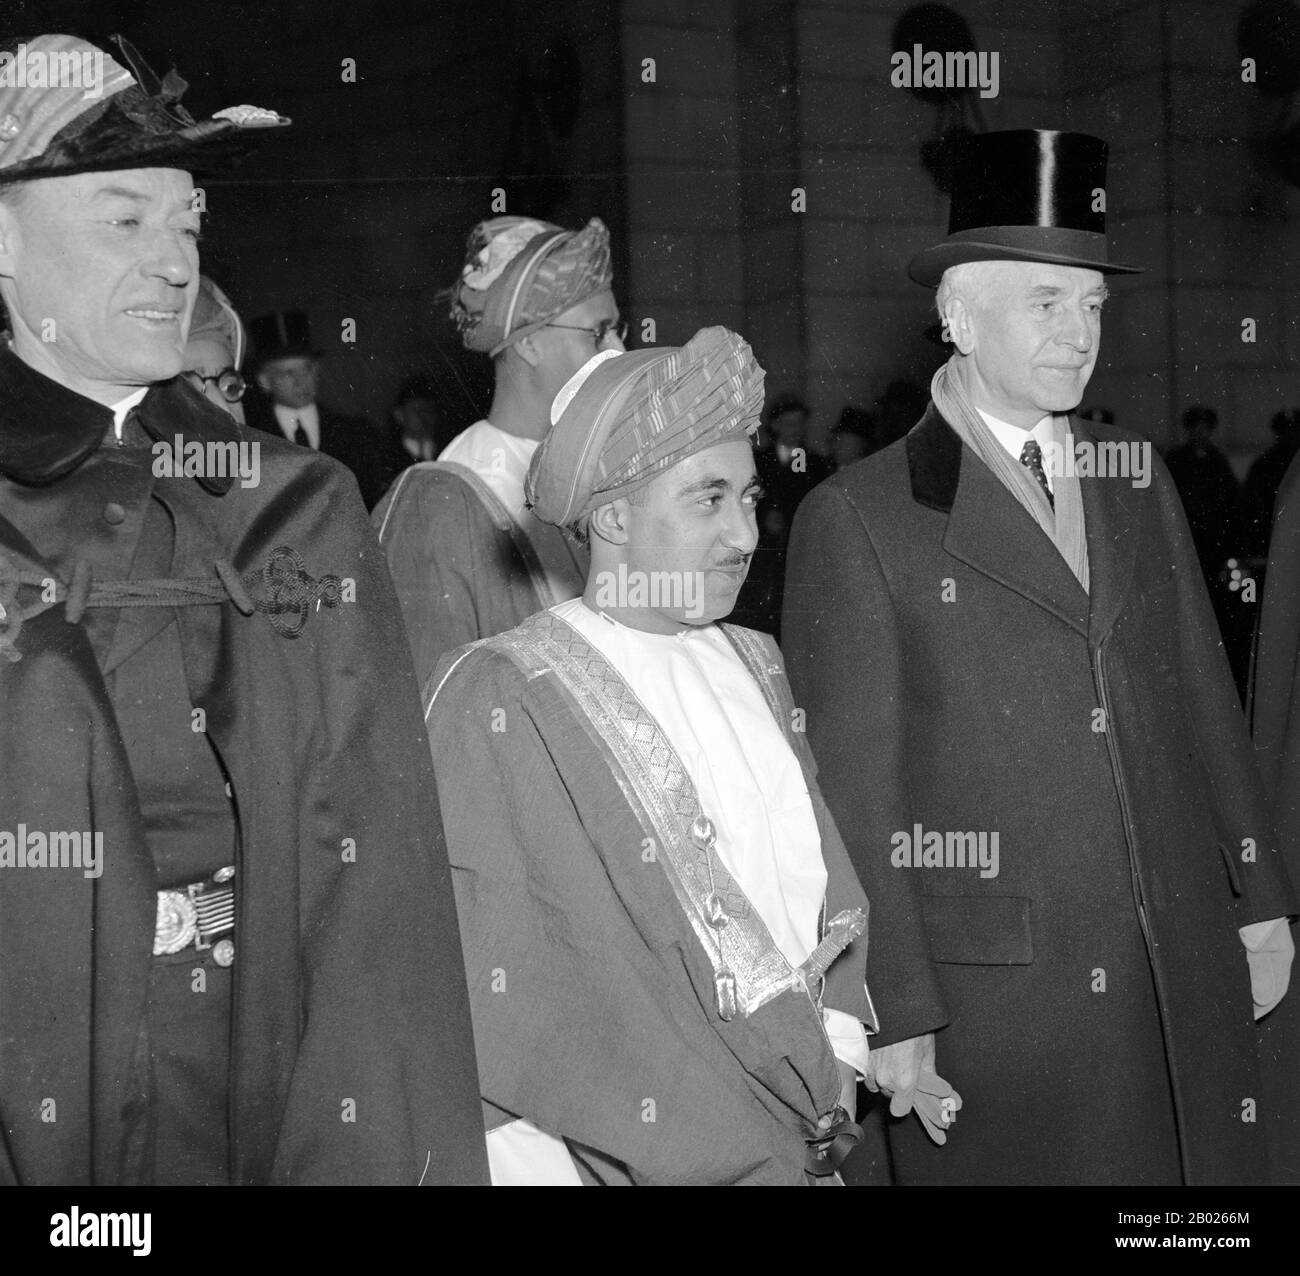 Sultan Ha Detto bin Taimur Bin Faisal in arrivo a Washington DC, USA, 1938, per rimborsare una visita effettuata da Edmund Roberts (1832), che è stato nominato dal presidente Andrew Jackson per negoziare trattati con le piccole nazioni dell'Oriente, con il segretario di Stato Cordell Hull. Detto bin Taimur (13 agosto 1910 – 19 ottobre 1972) (arabo: سعيد بن تيمور‎) fu il sultano di Muscat e Oman (il paese successivamente rinominato Oman) dal 10 febbraio 1932 fino al suo rovesciamento il 23 luglio 1970. Foto Stock